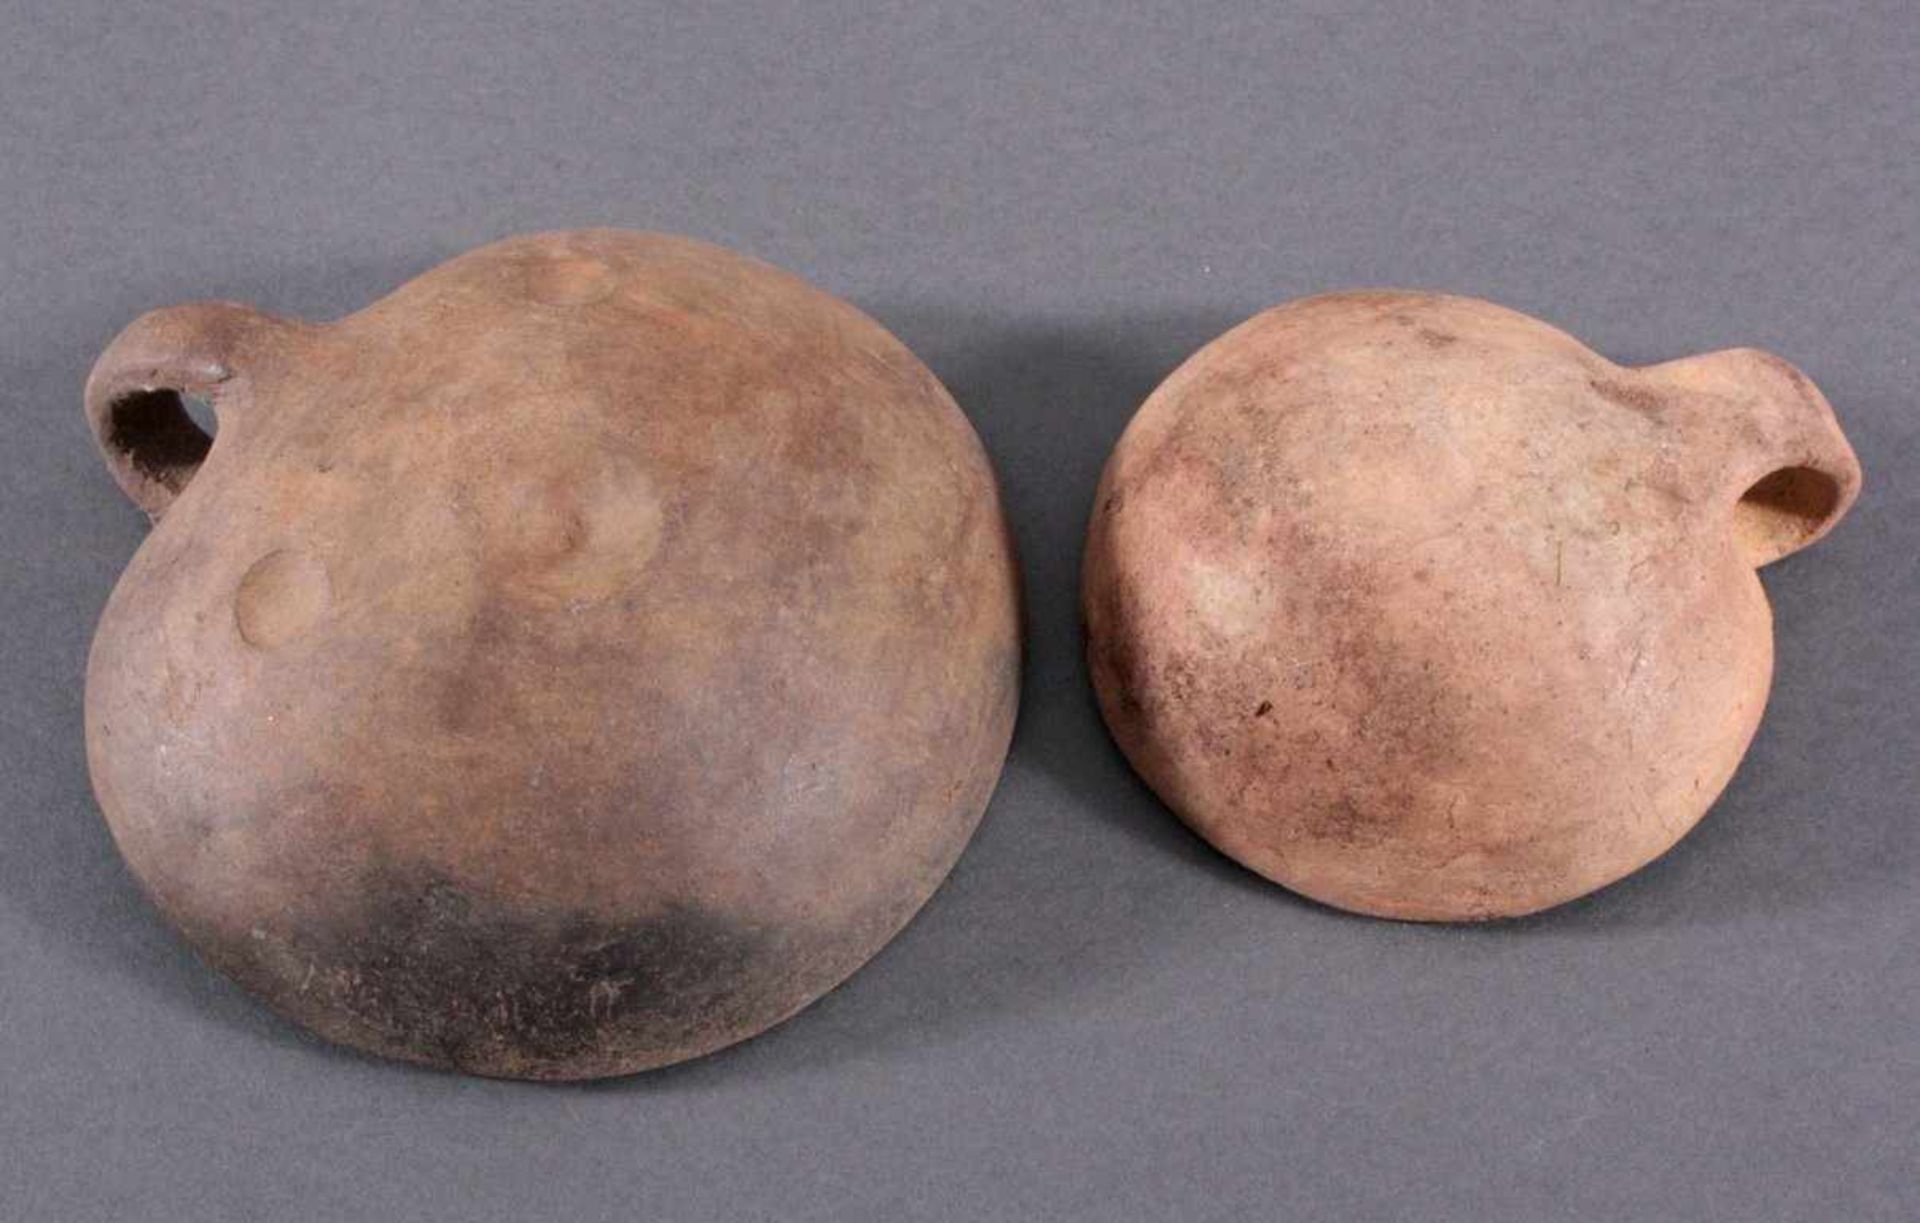 Gefäß der Lausitzer Kultur (900-500 v. Chr.)2 Omphalosschalen.1x aus glattem hellbraunen Ton, ca. - Bild 2 aus 2